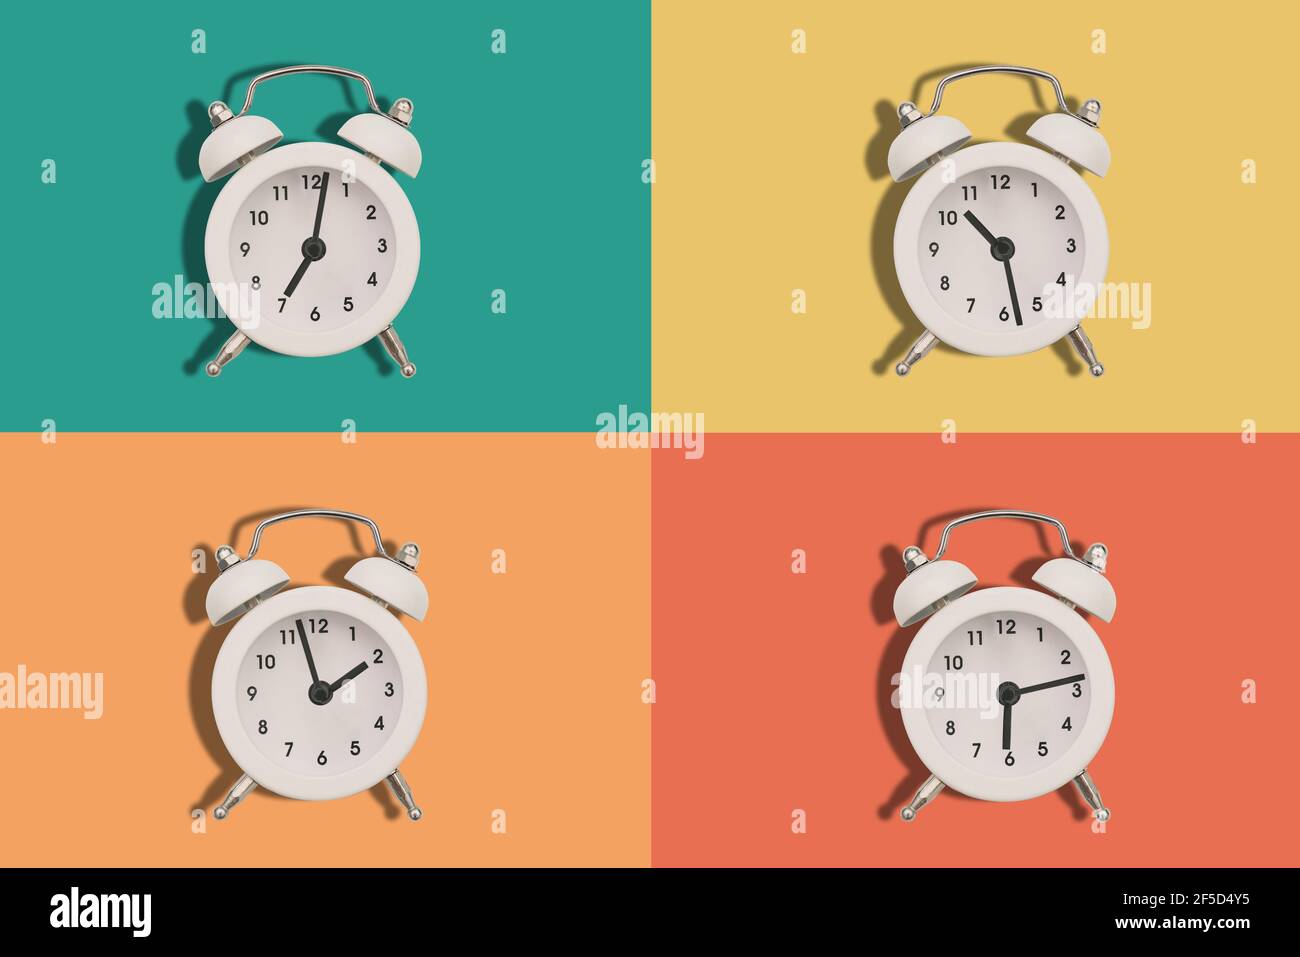 Vier Wecker auf farbigem Hintergrund. Die Zeiger der Uhr zeigen unterschiedliche Zeiten an. Flach liegend. Stockfoto